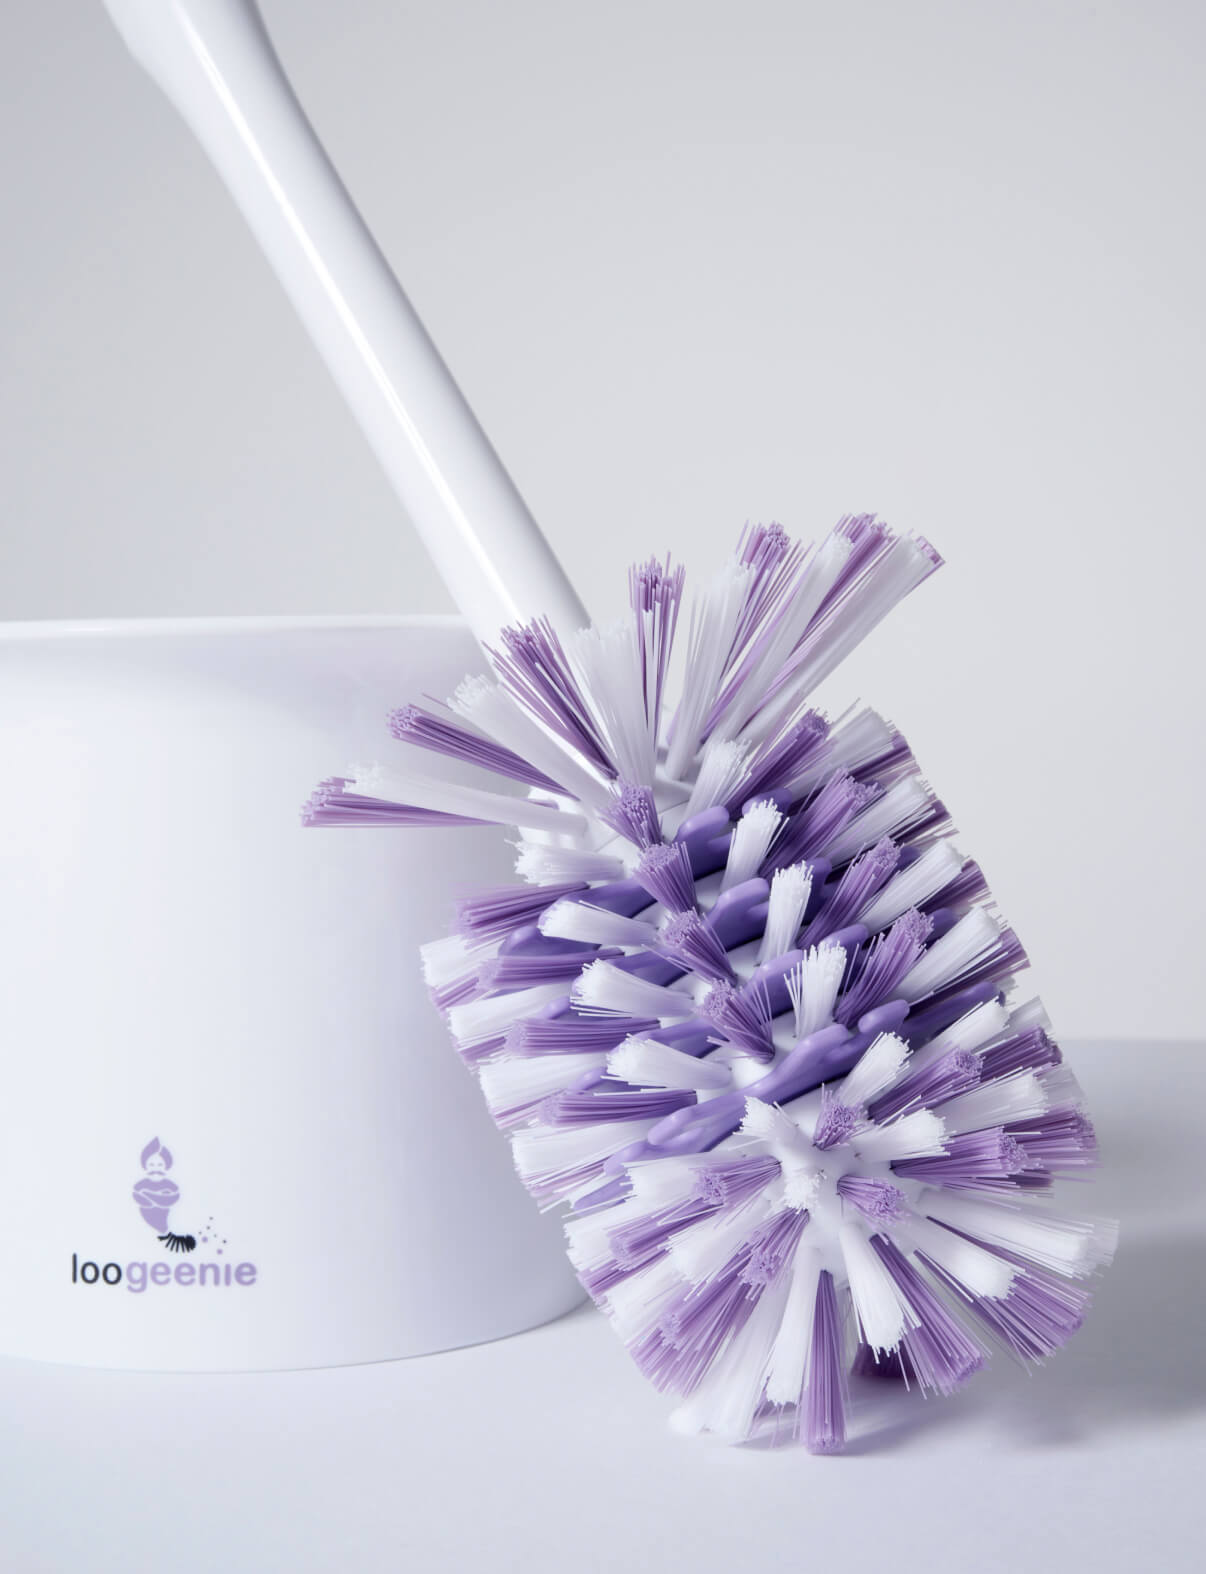 Loogeenie — the world's best toilet brush. – Loogeenie